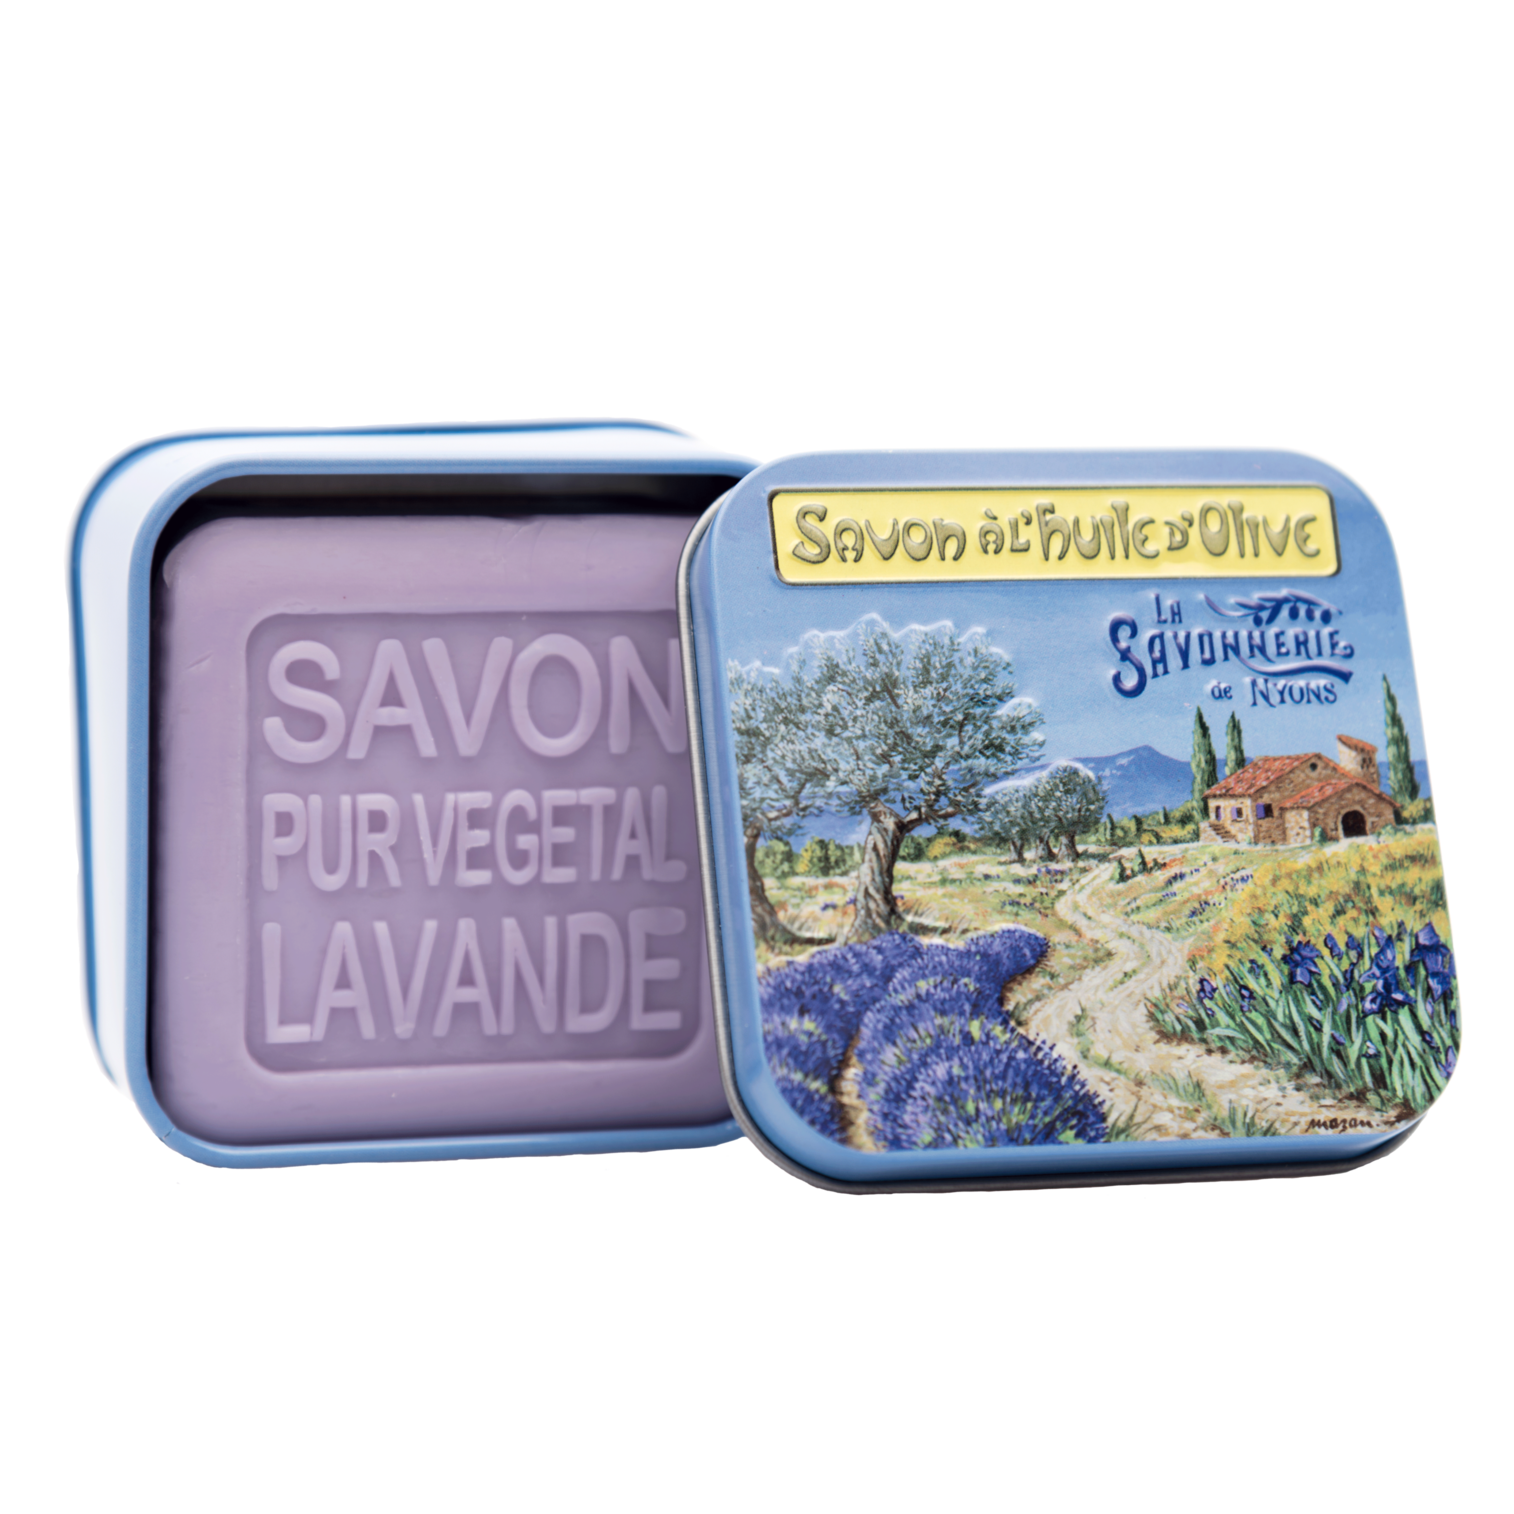 La Savonnerie de Nyons 100g Soap in Tin Box - Landscapes (Set of 2)